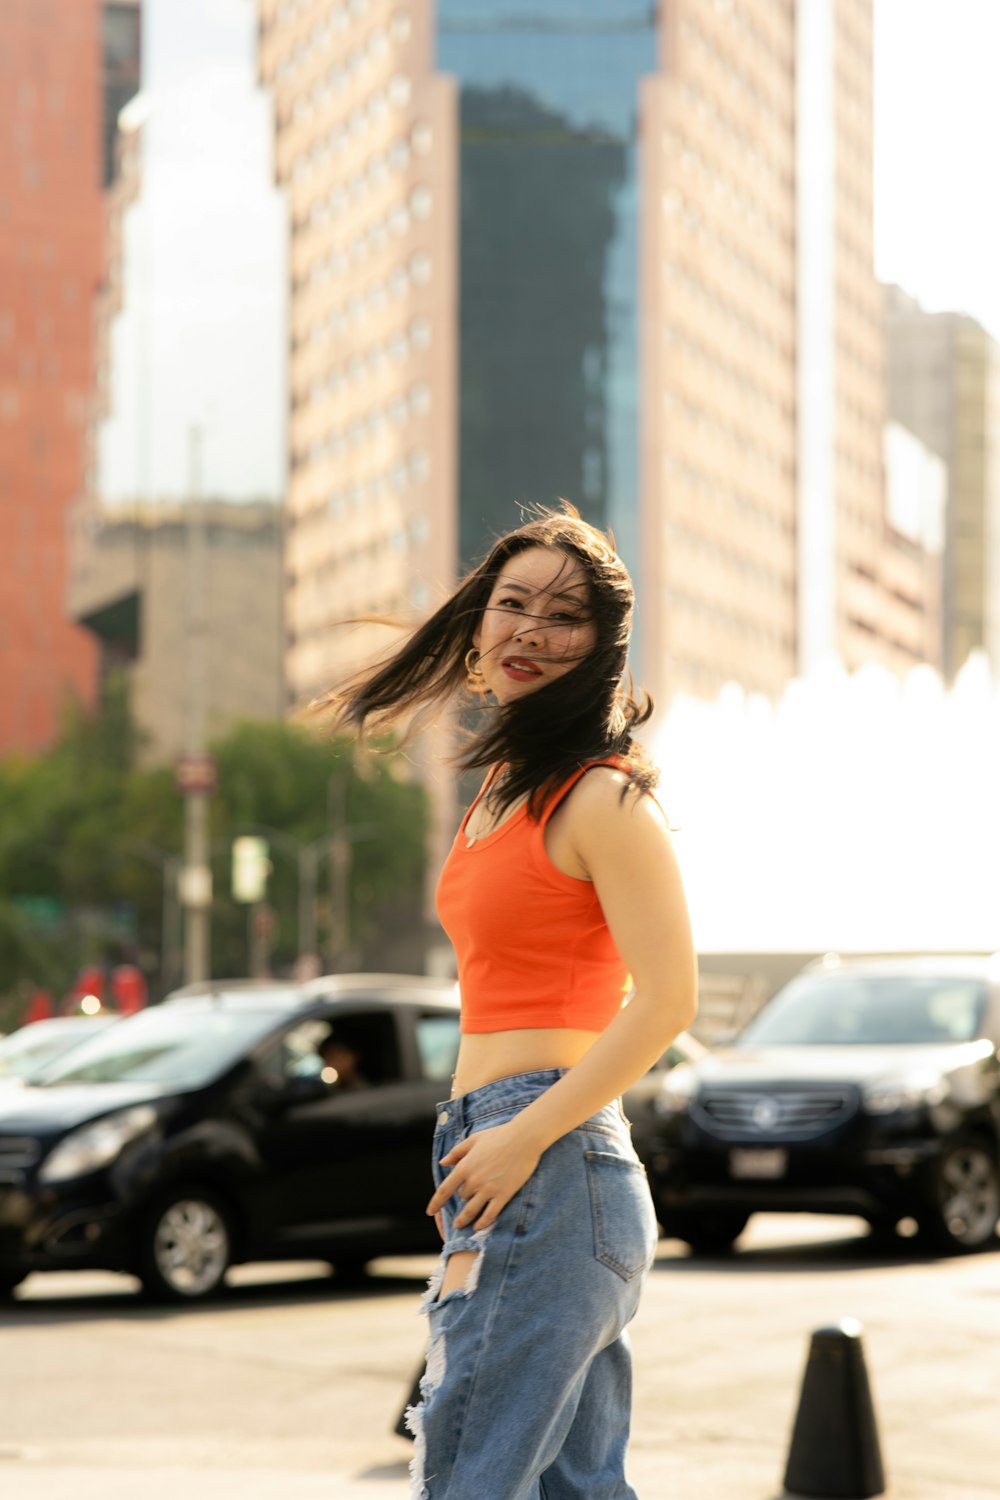 a woman in an orange top is standing on a sidewalk